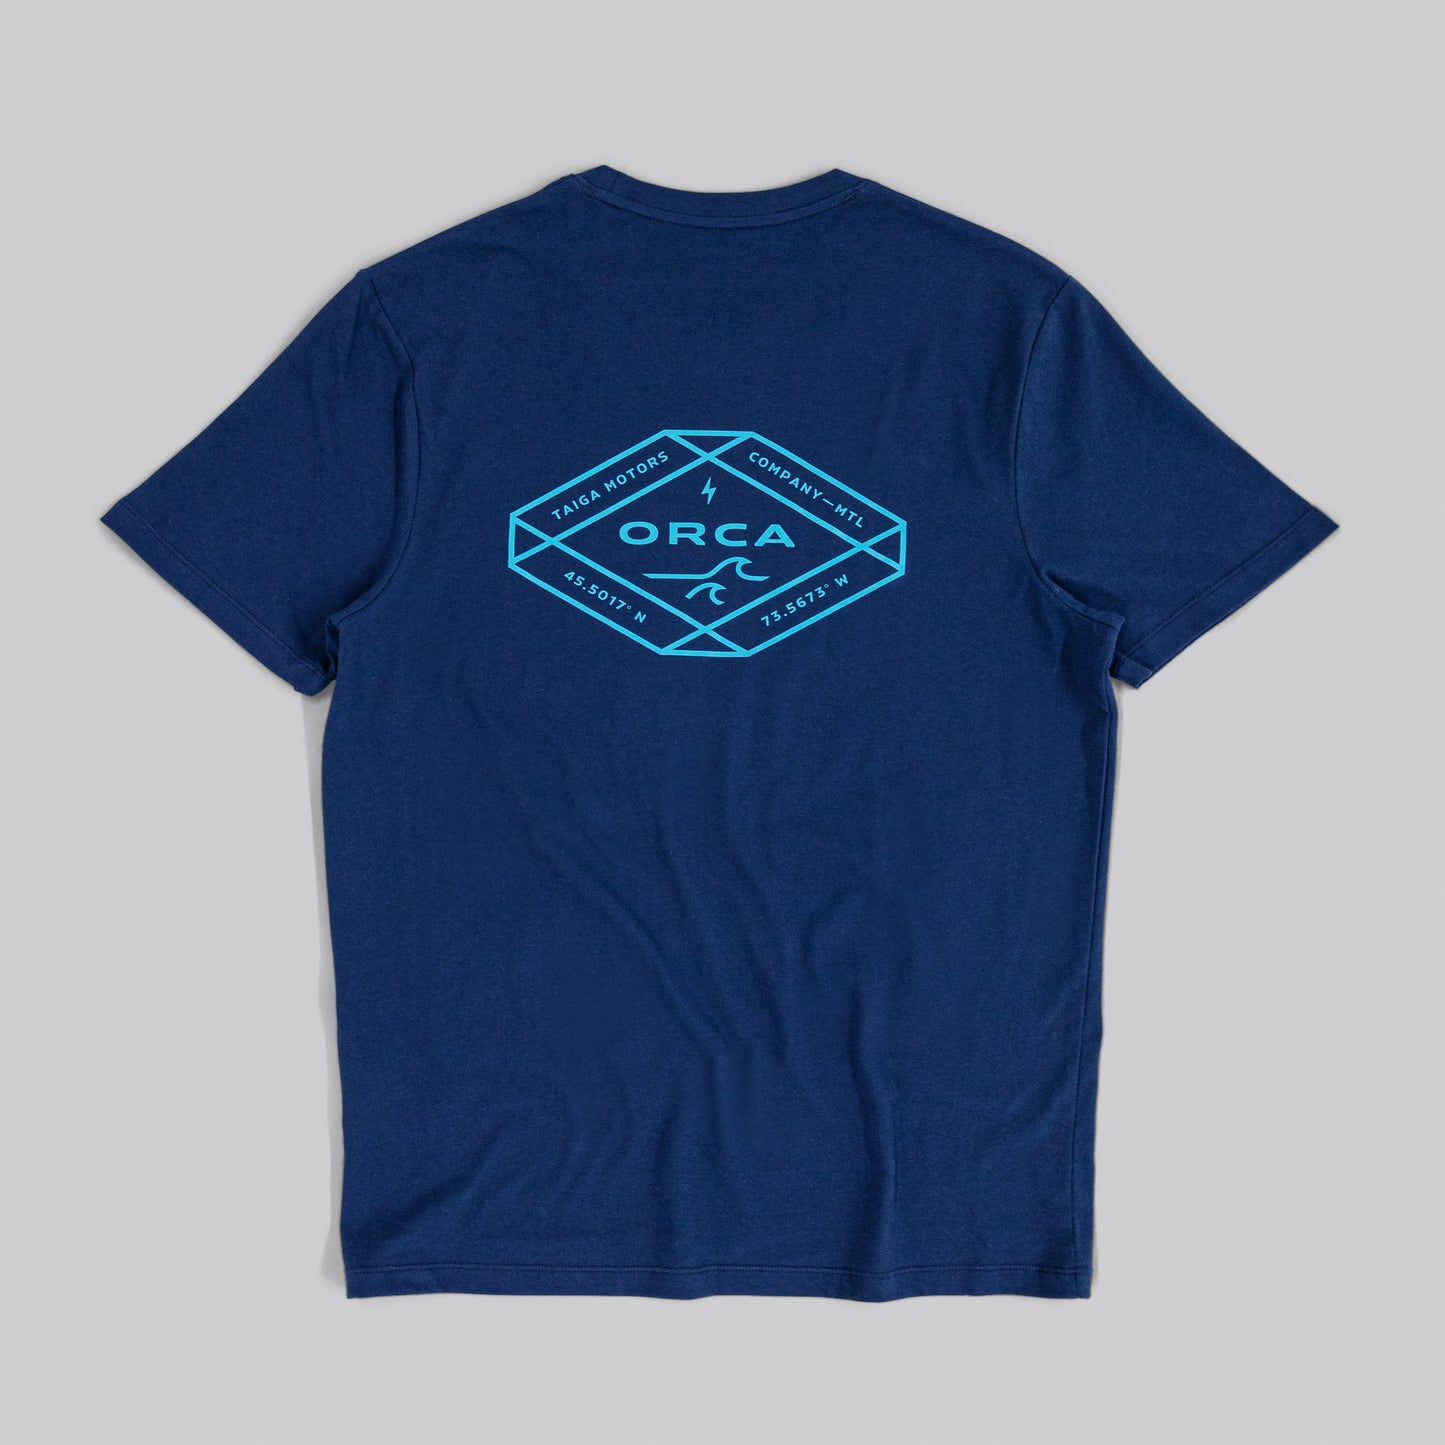 T-shirt Waves